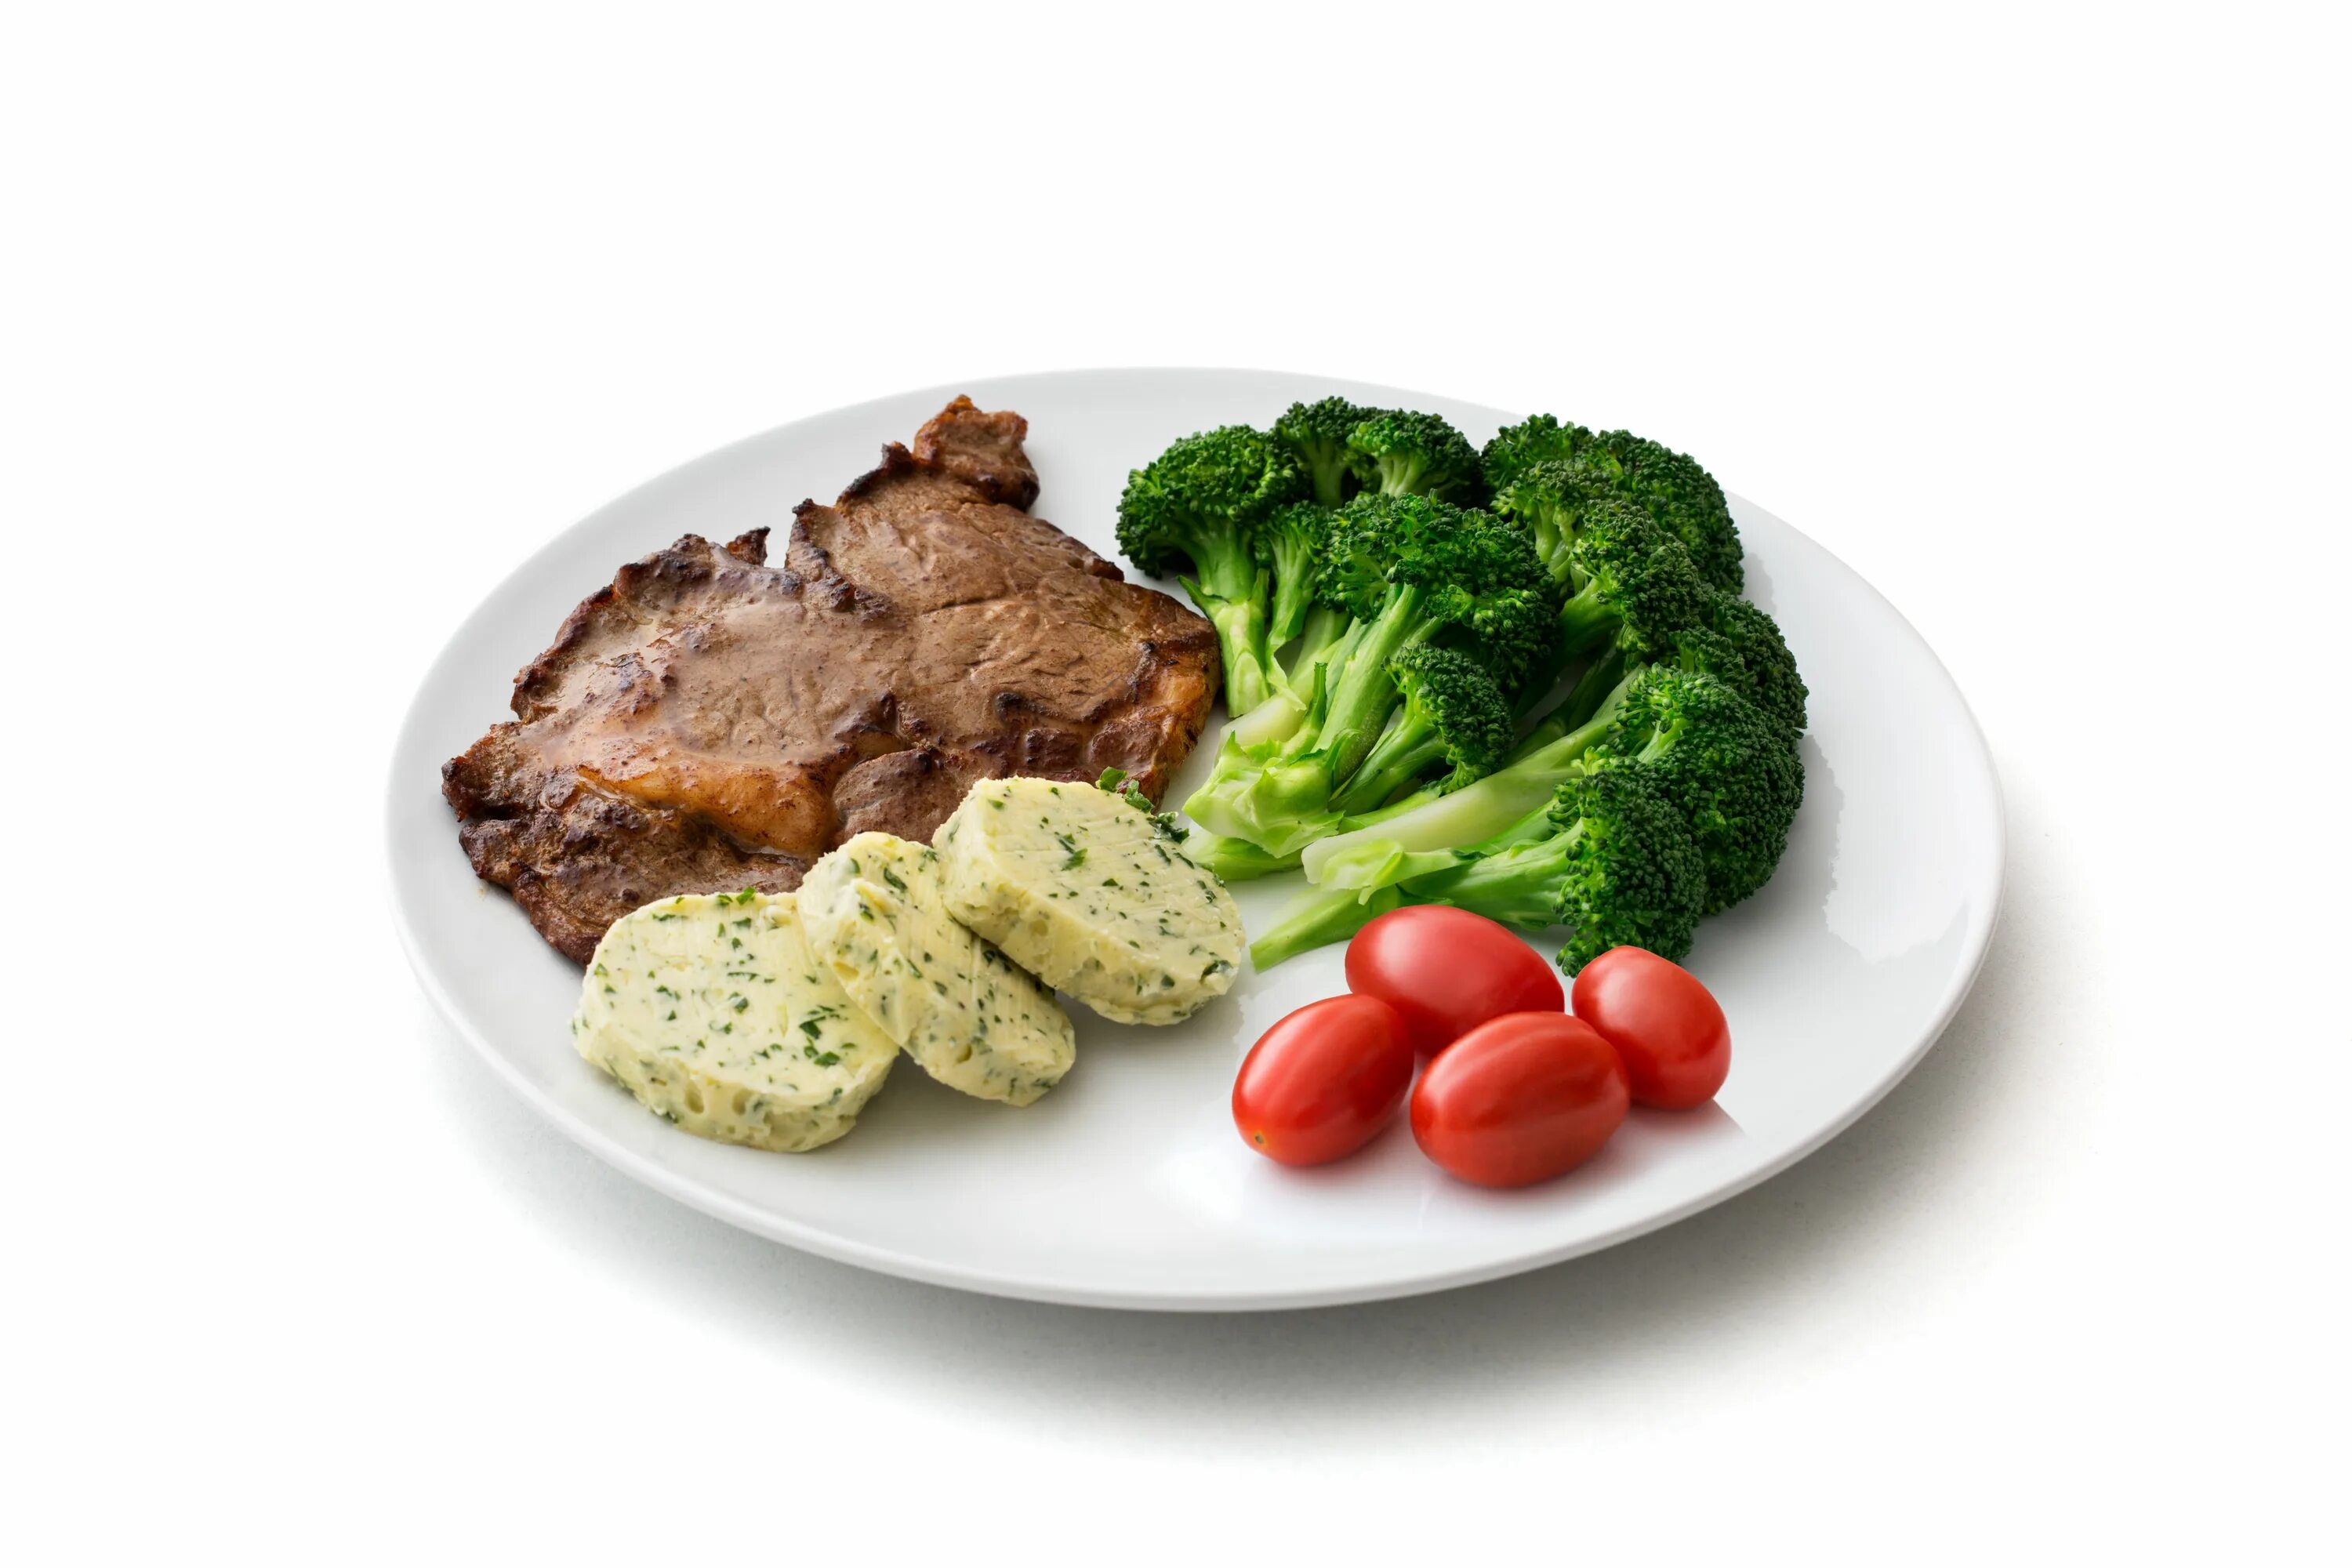 Тарелка с едой. Блюда на белом фоне. Тарелка с мясом и овощами. Диетические блюда на белом фоне. Диетический белковый